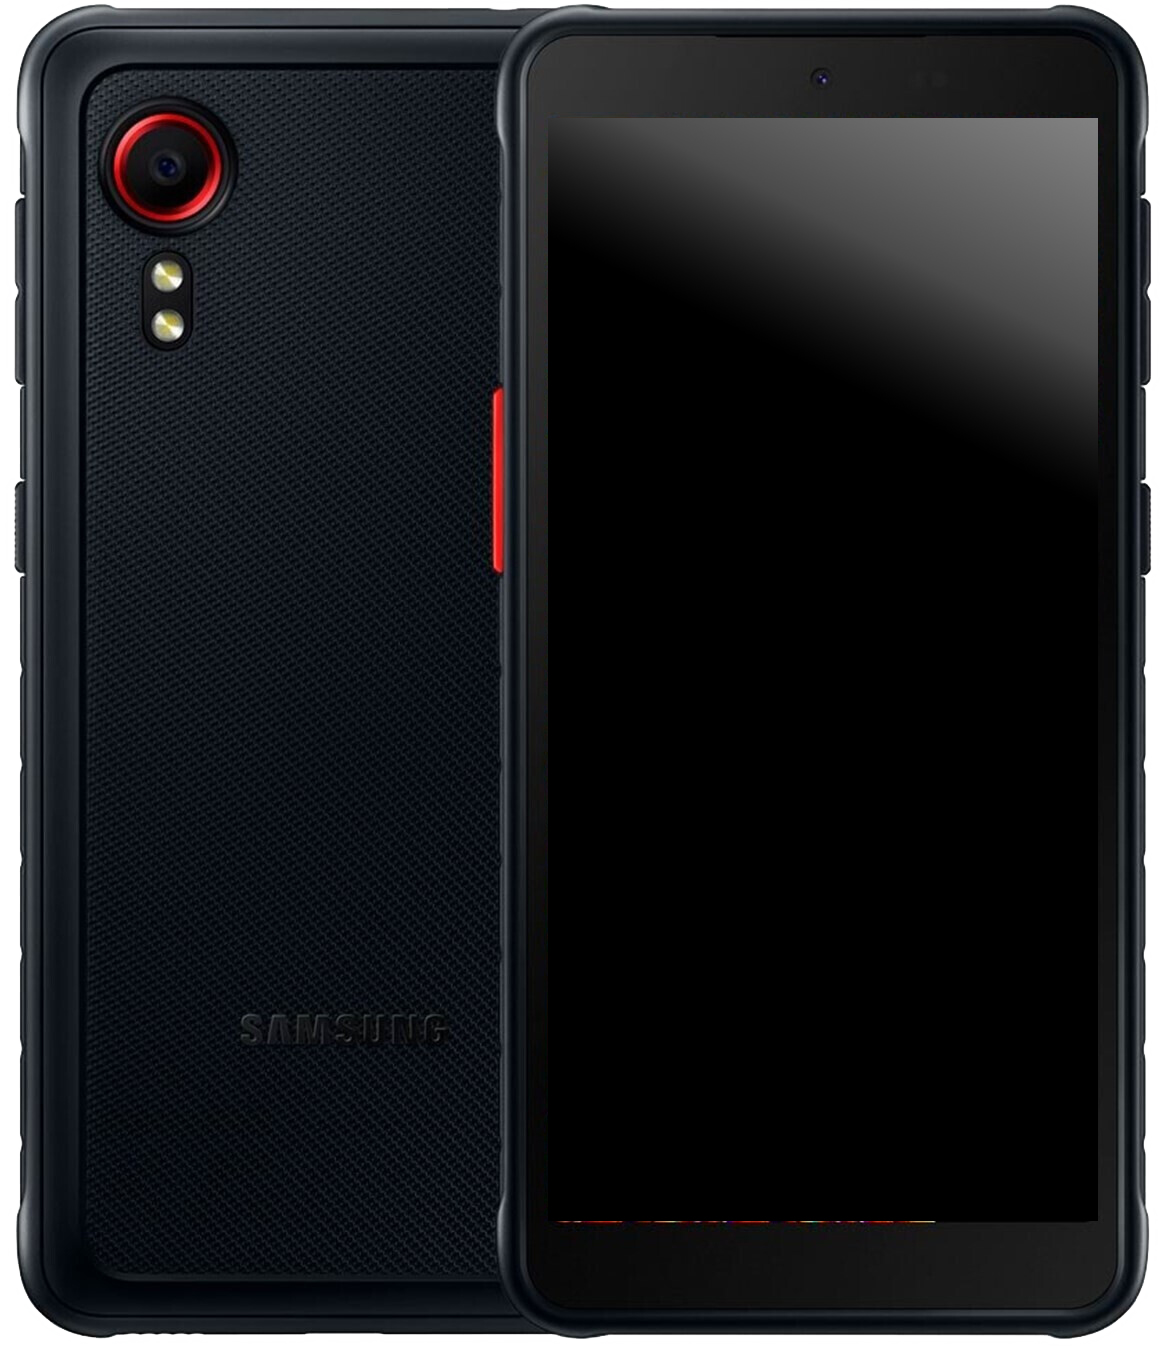 Samsung Galaxy Xcover 5 Dual-SIM schwarz - Onhe Vertrag